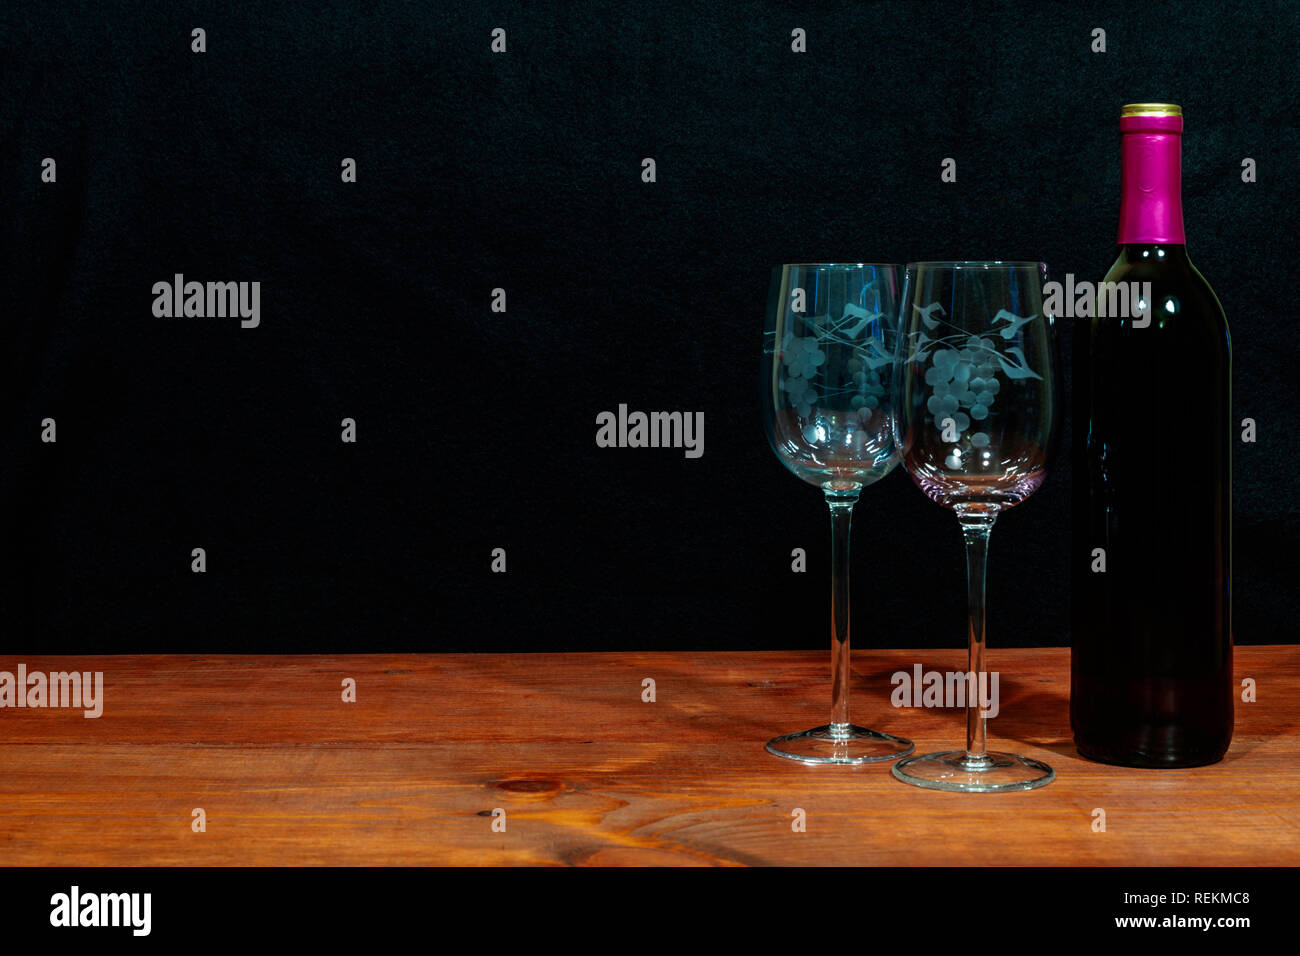 Schöne geätzte Gläser und eine Flasche Rotwein auf dem Tisch und dunklen Hintergrund. Valentinstag, Muttertag, Ostern, Weihnachten, Hochzeit Konzepte Stockfoto